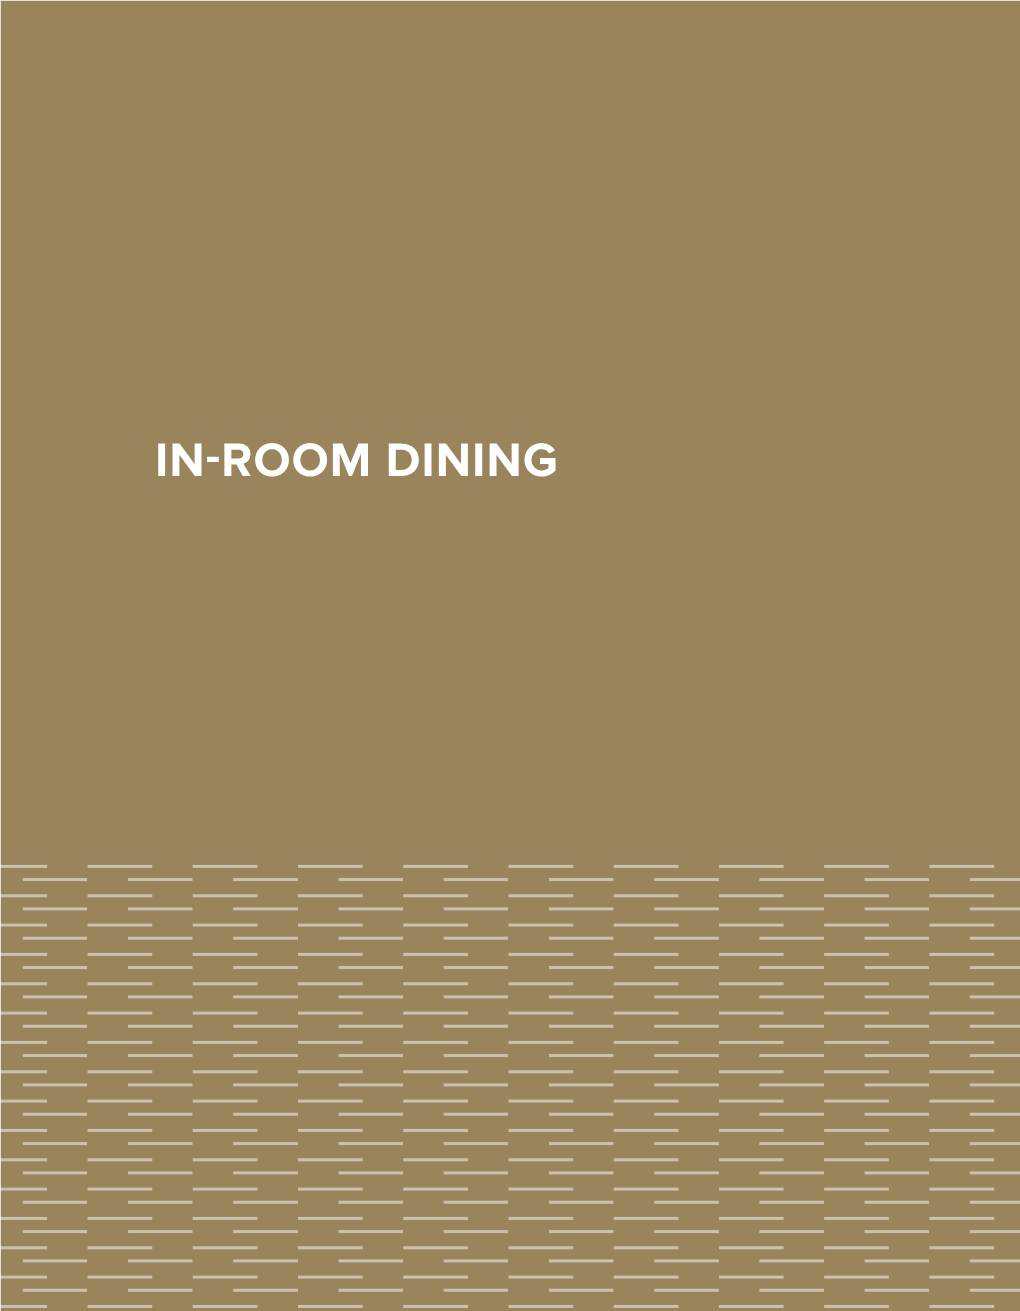 In-Room Dining Menu